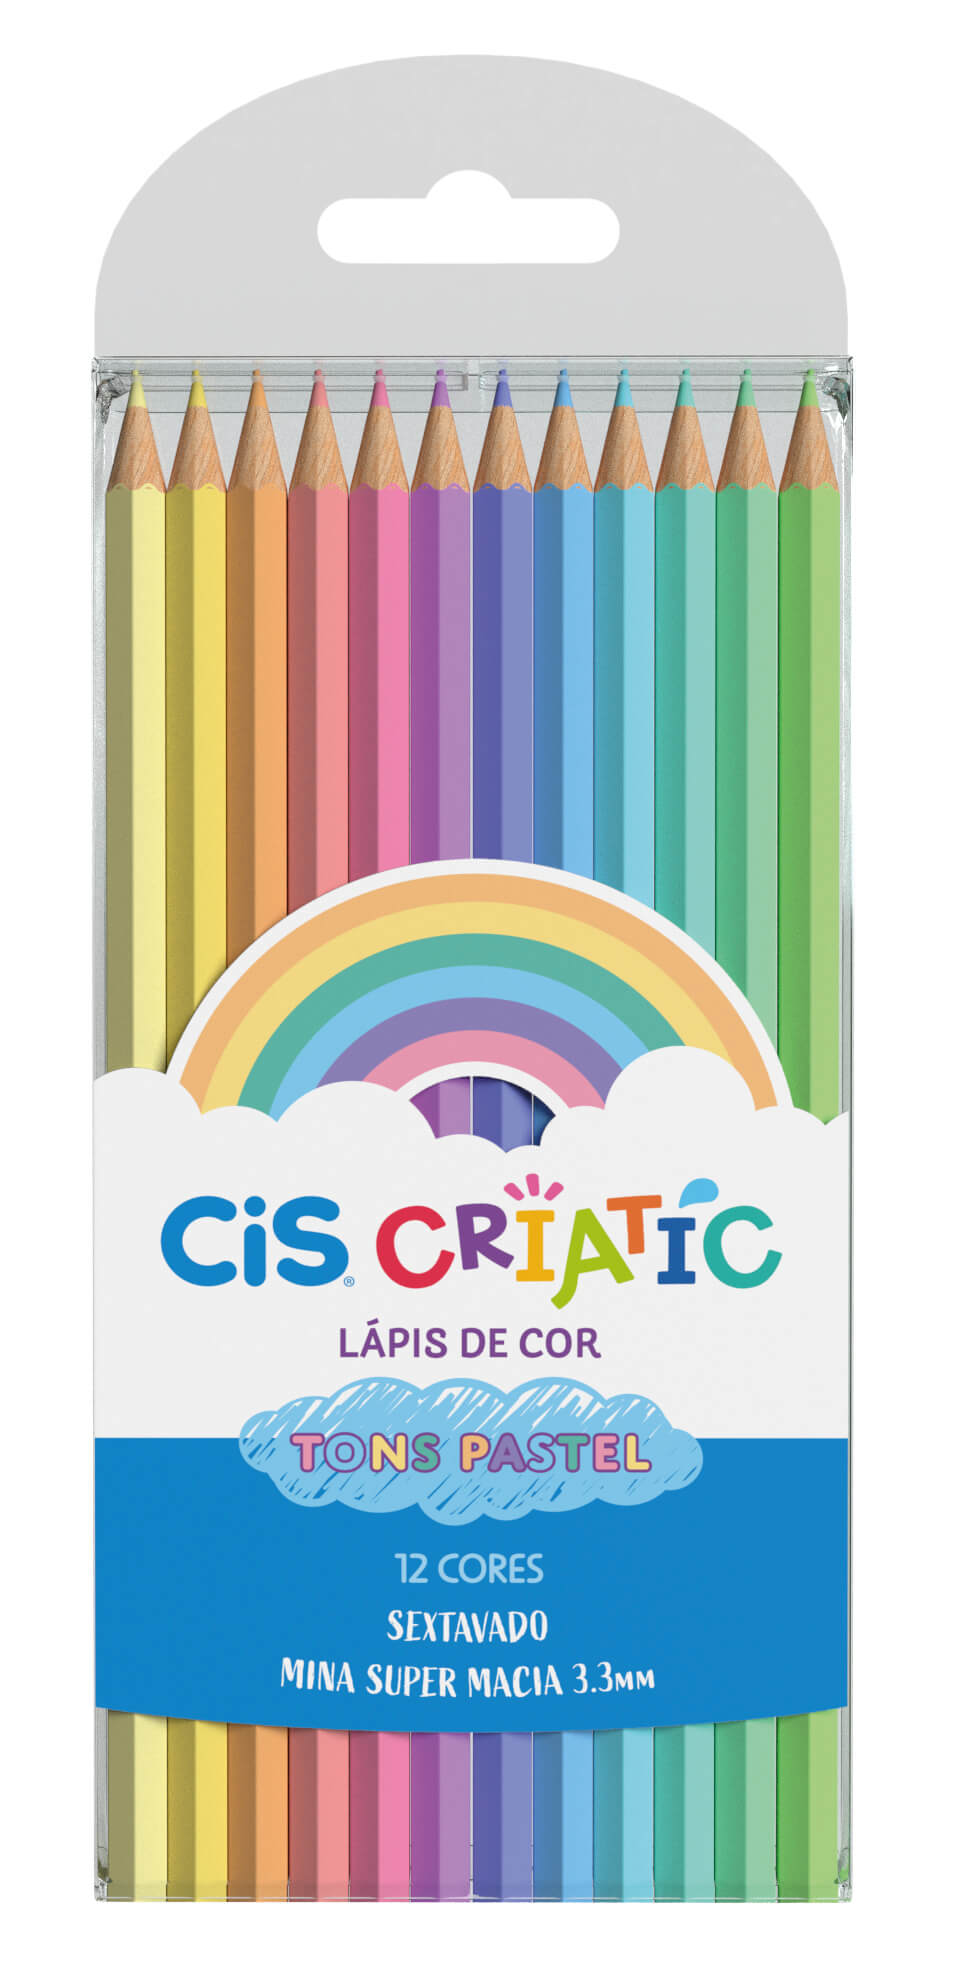 Lápis de Cor Pastel CIS Criatic 12 Cores